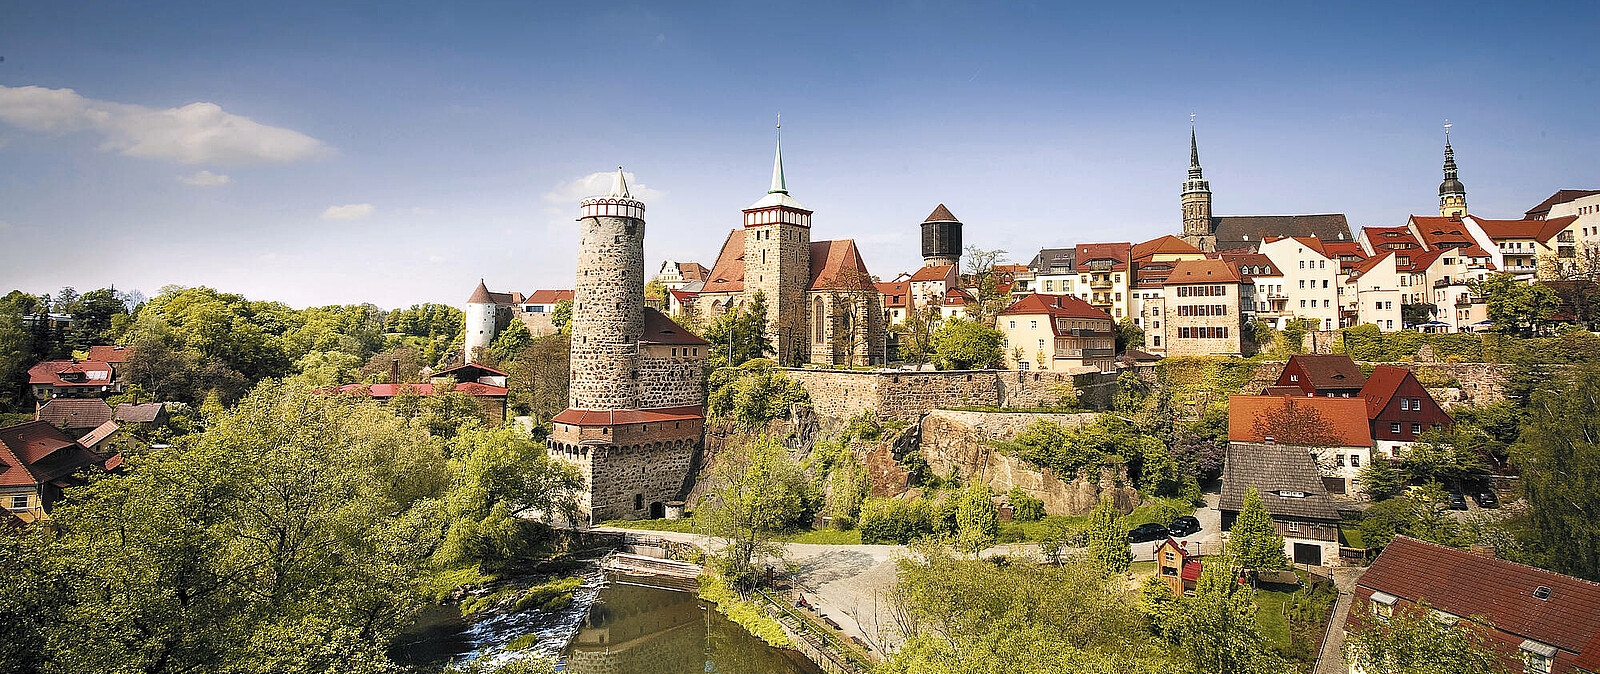 Bautzen wird wohl zu allerst mit dem bekannten Senf in Verbindung gebracht. Allerdings steht diese schöne Lausitzer Stadt auch für sorbische Kultur und entdeckungsreiche Türme